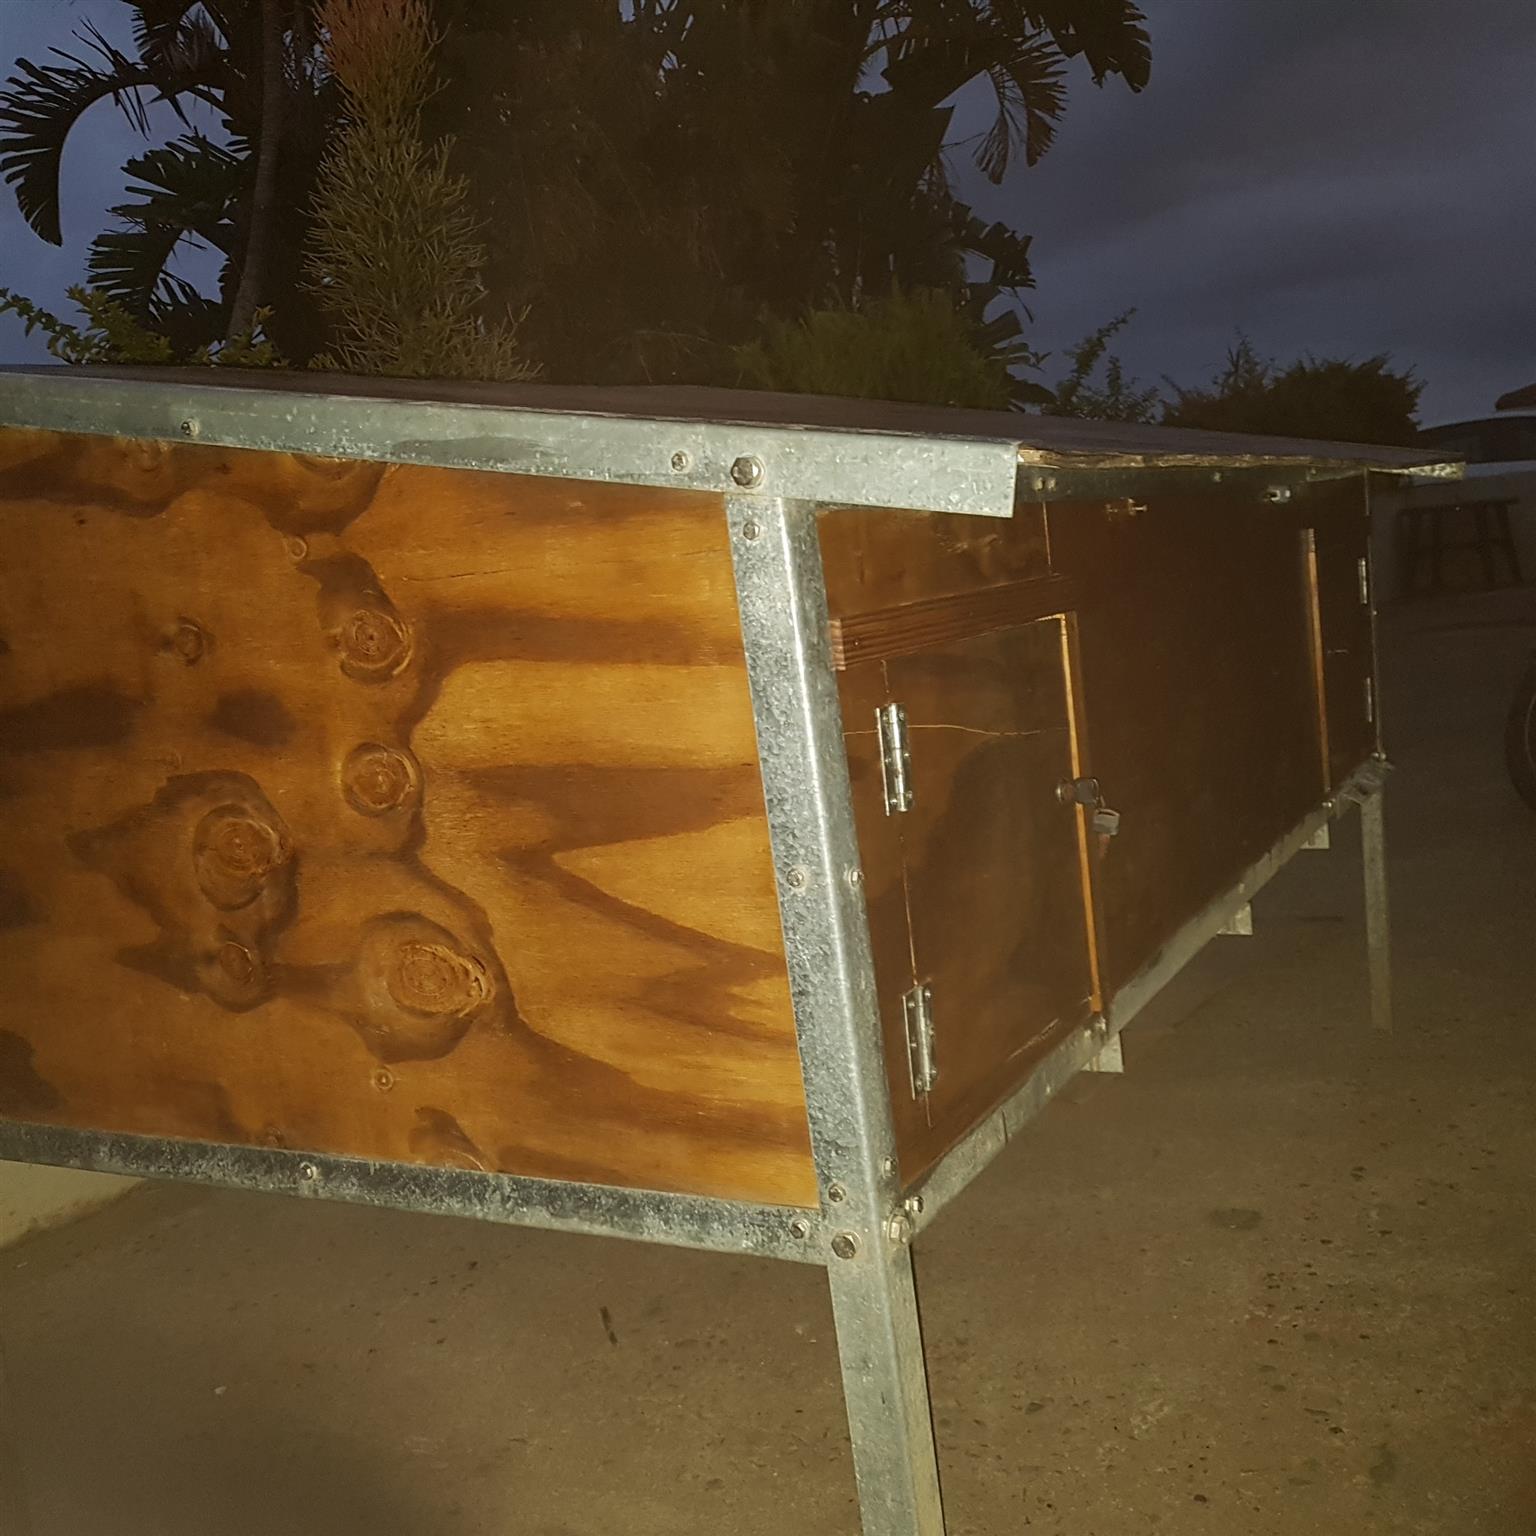 Solar powered chicken coop 